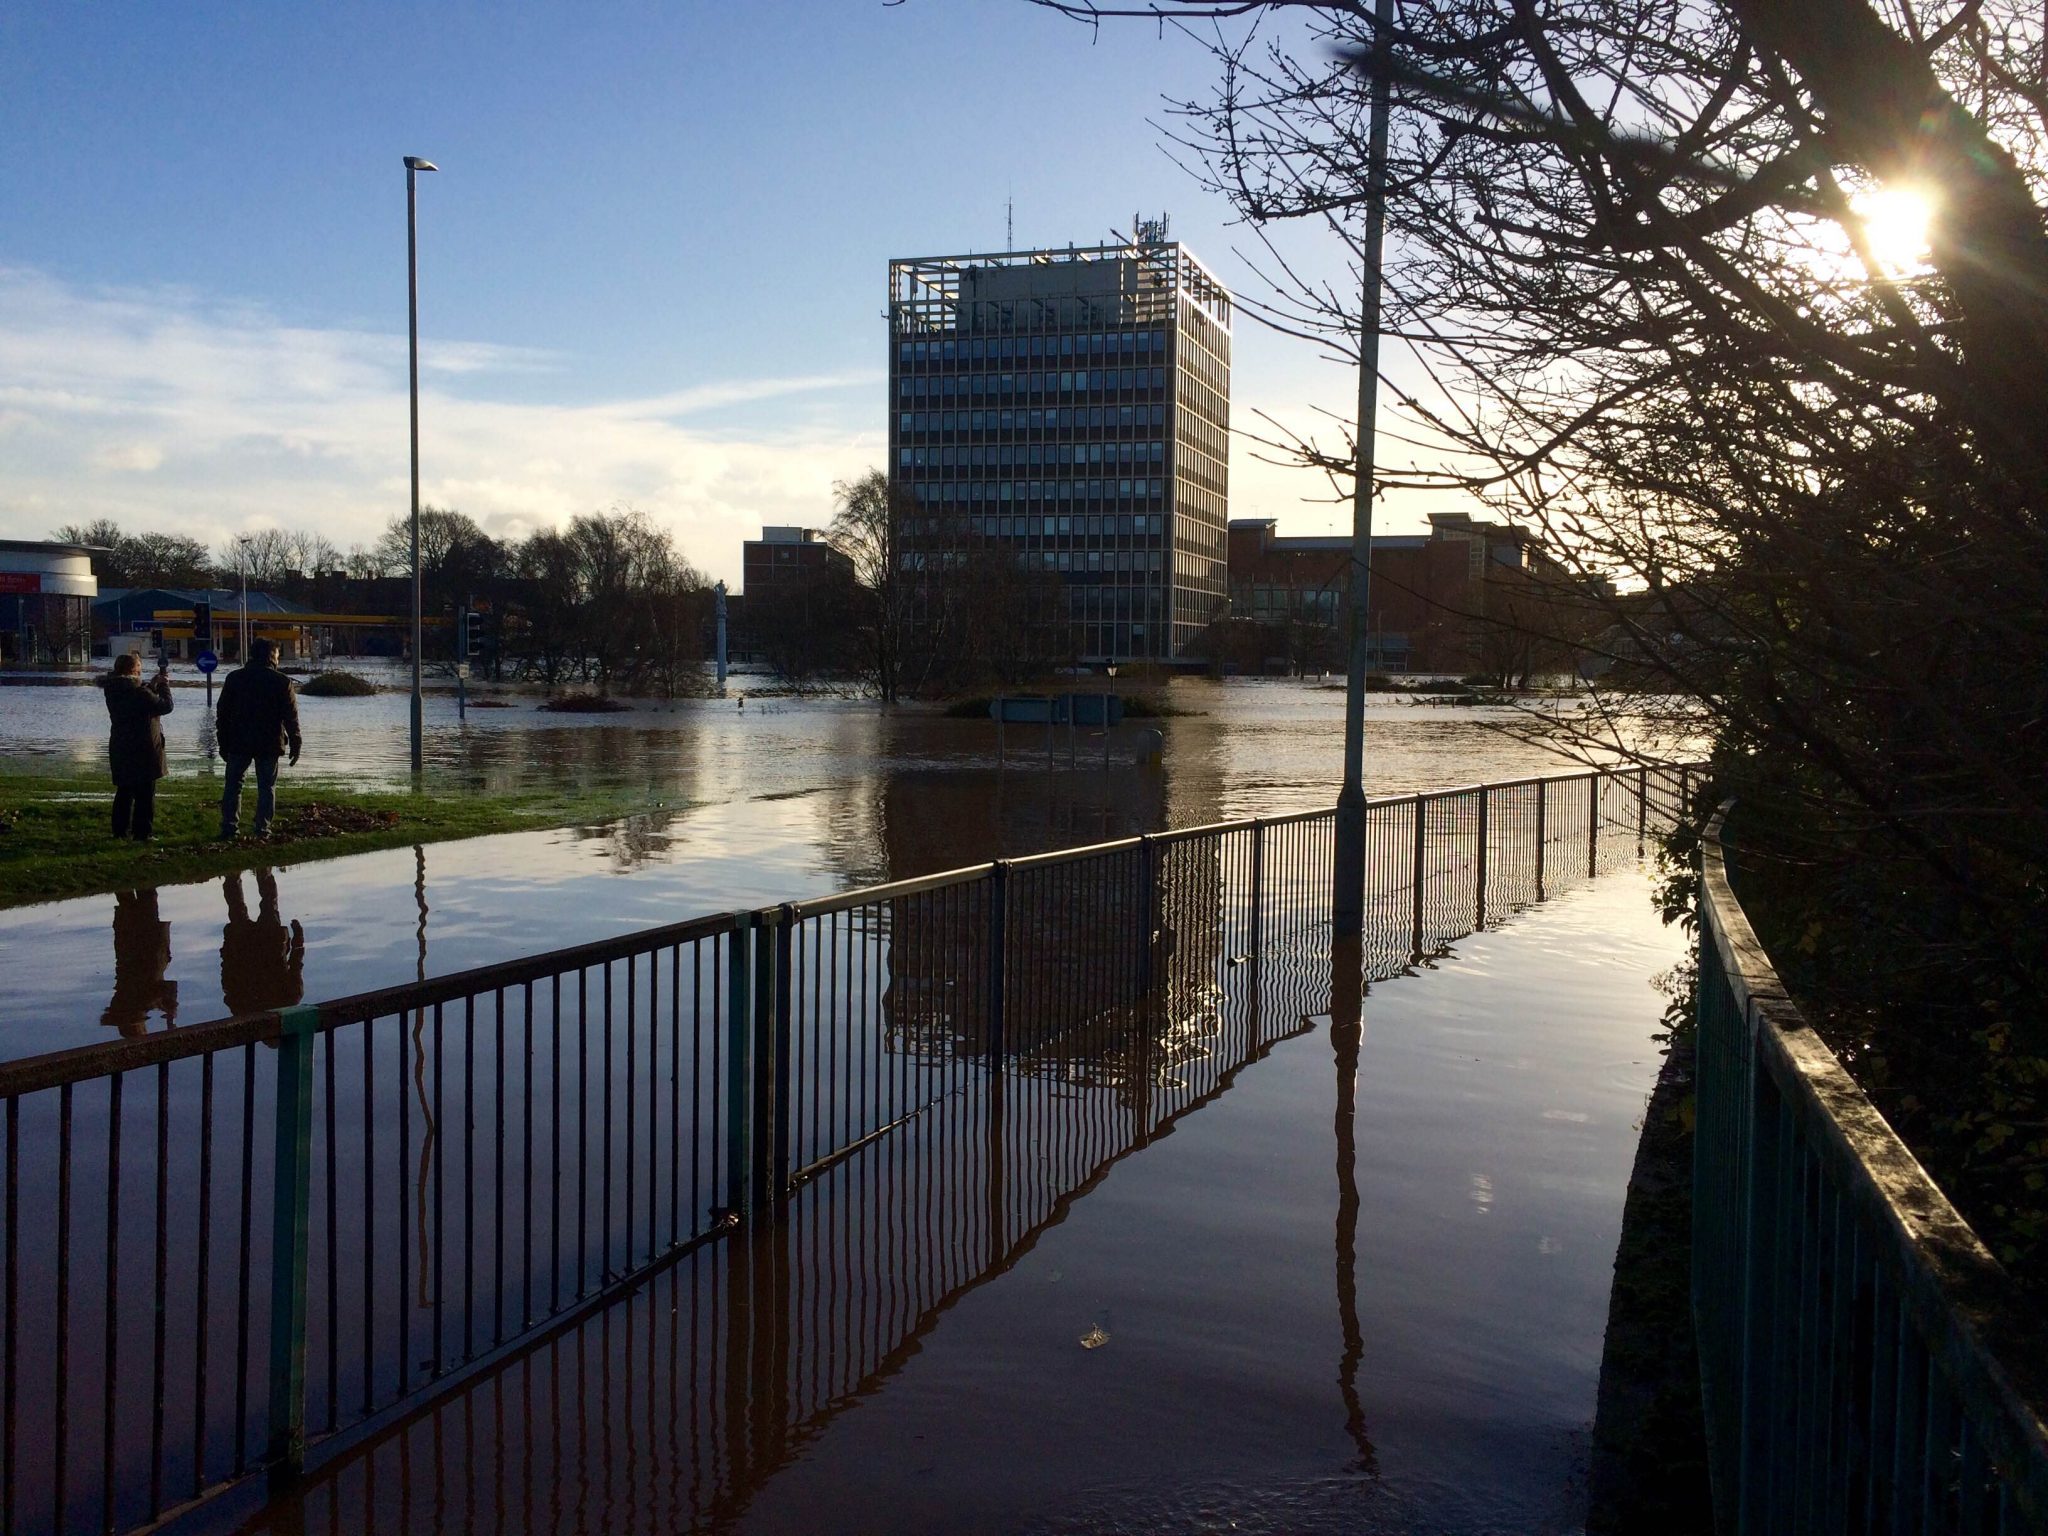 carlisle floods 2015 case study